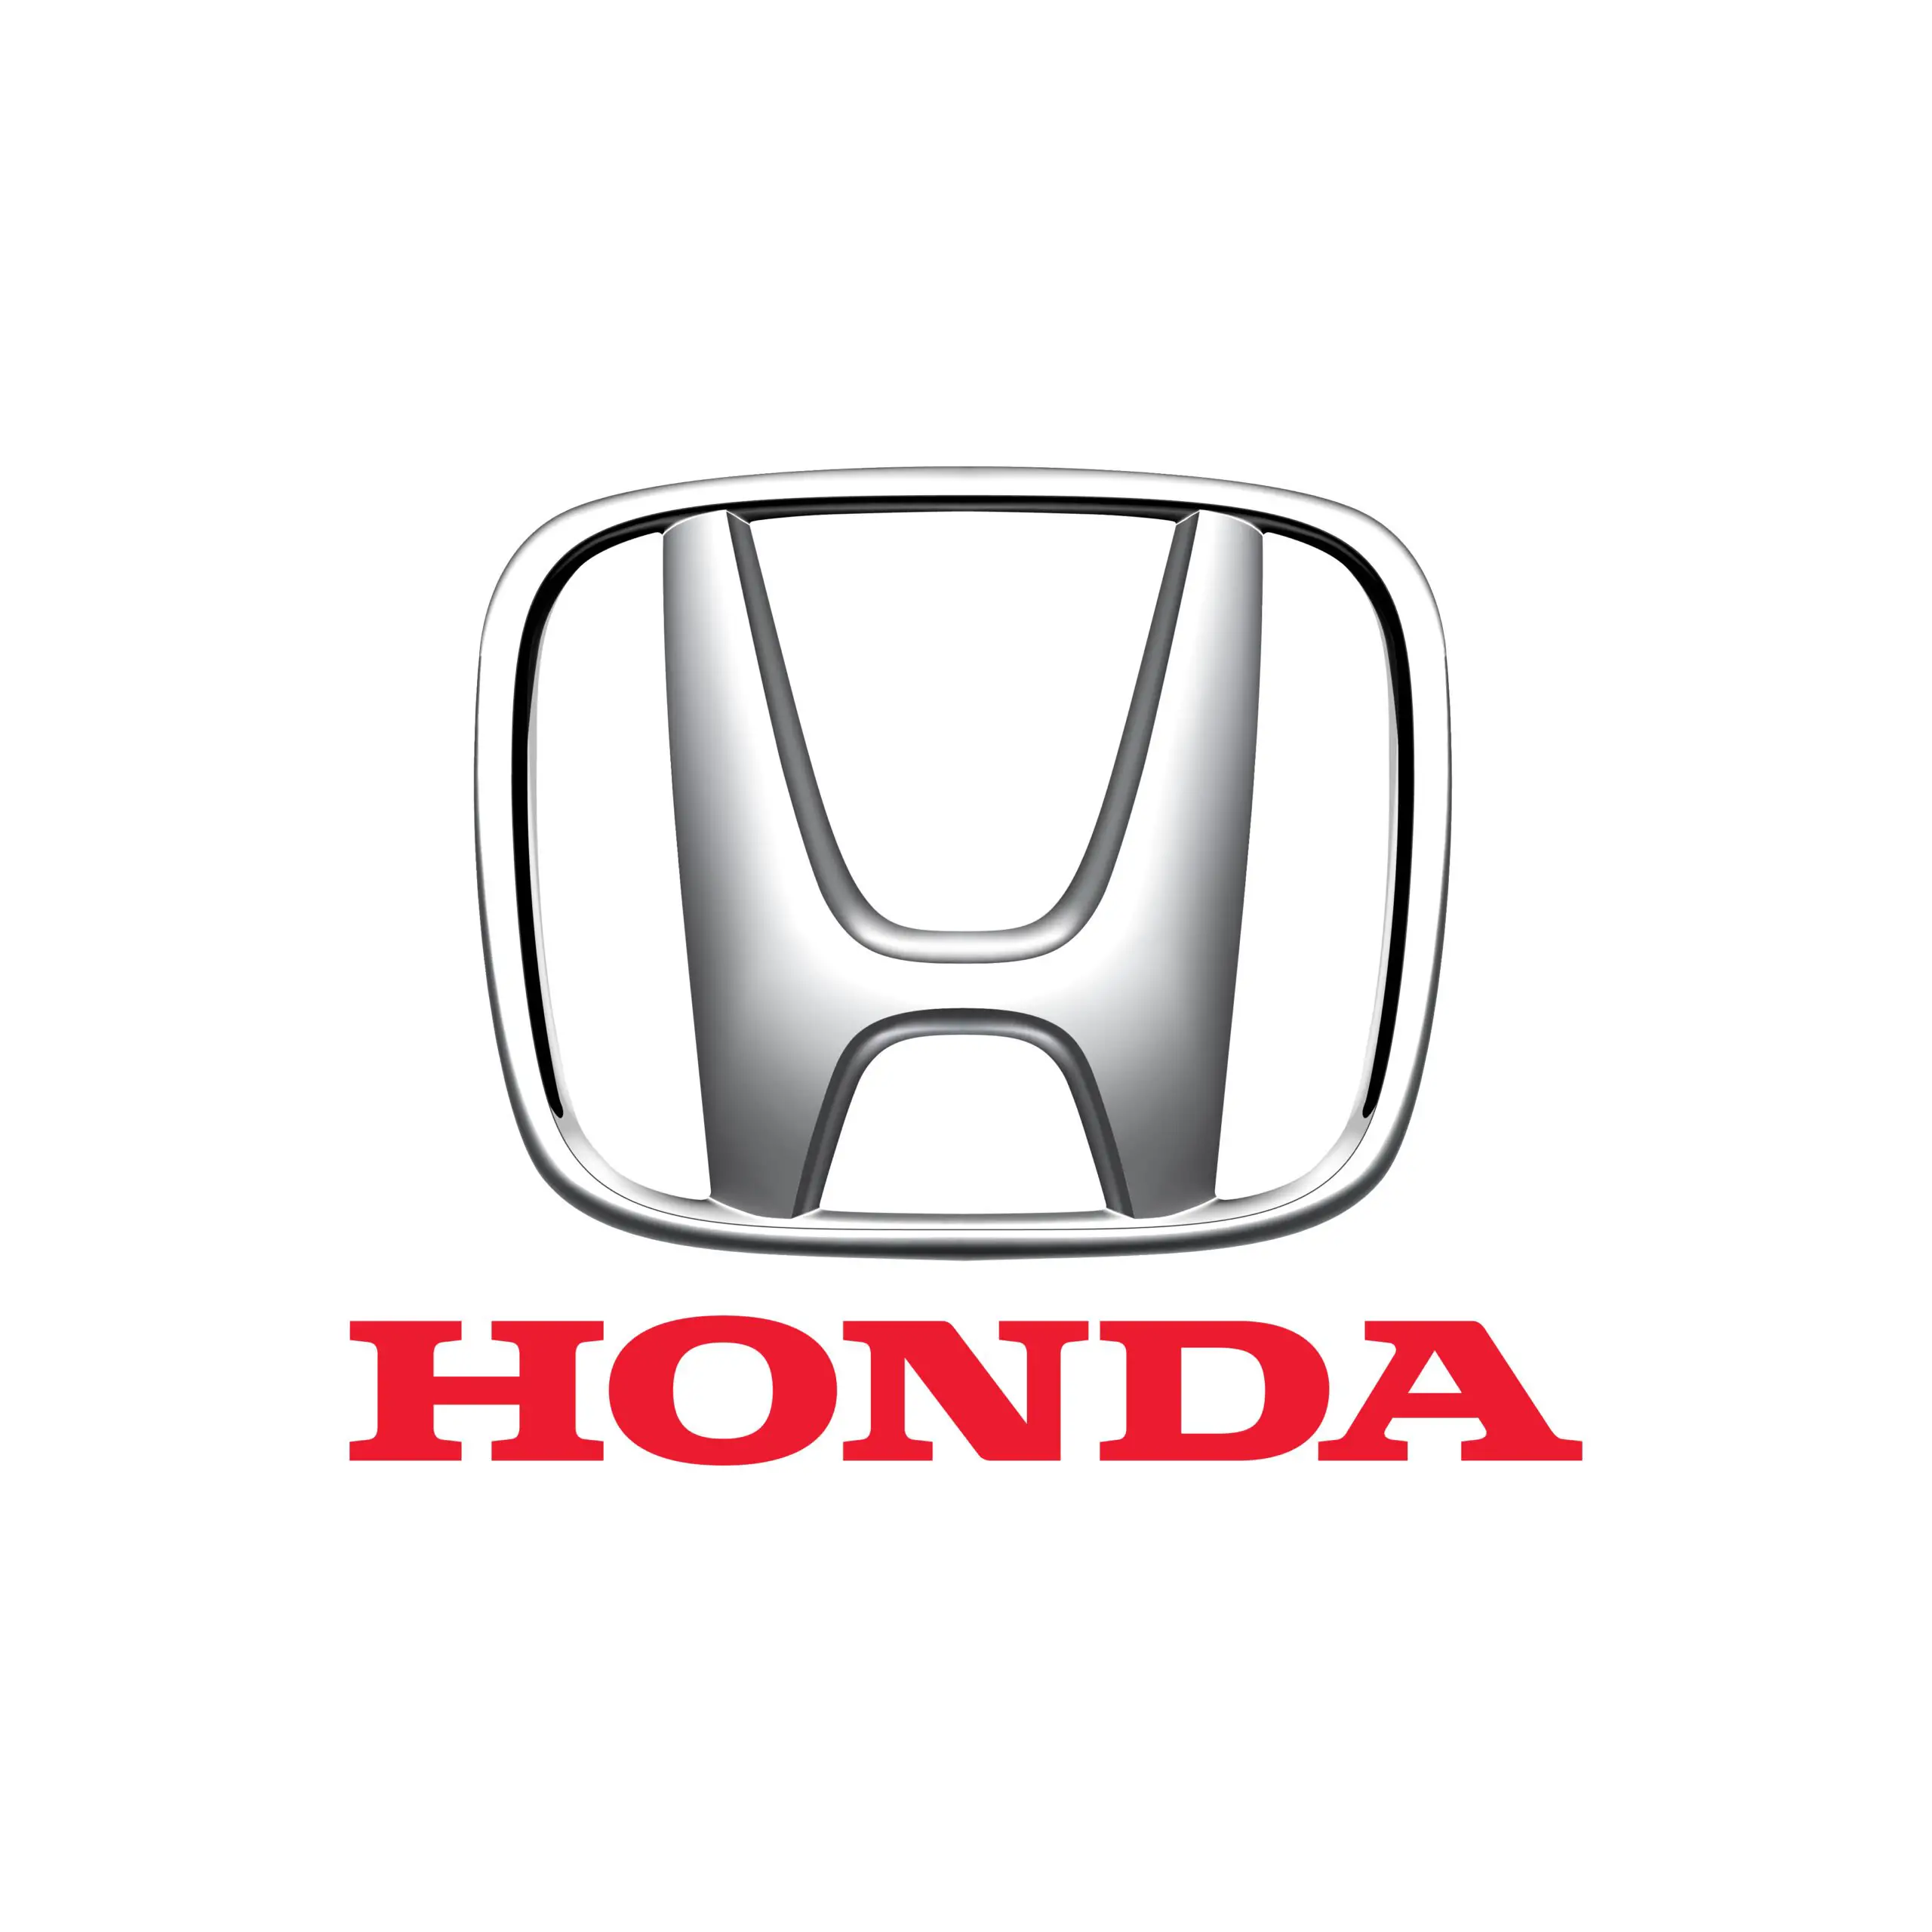 Honda service centre in Bedford